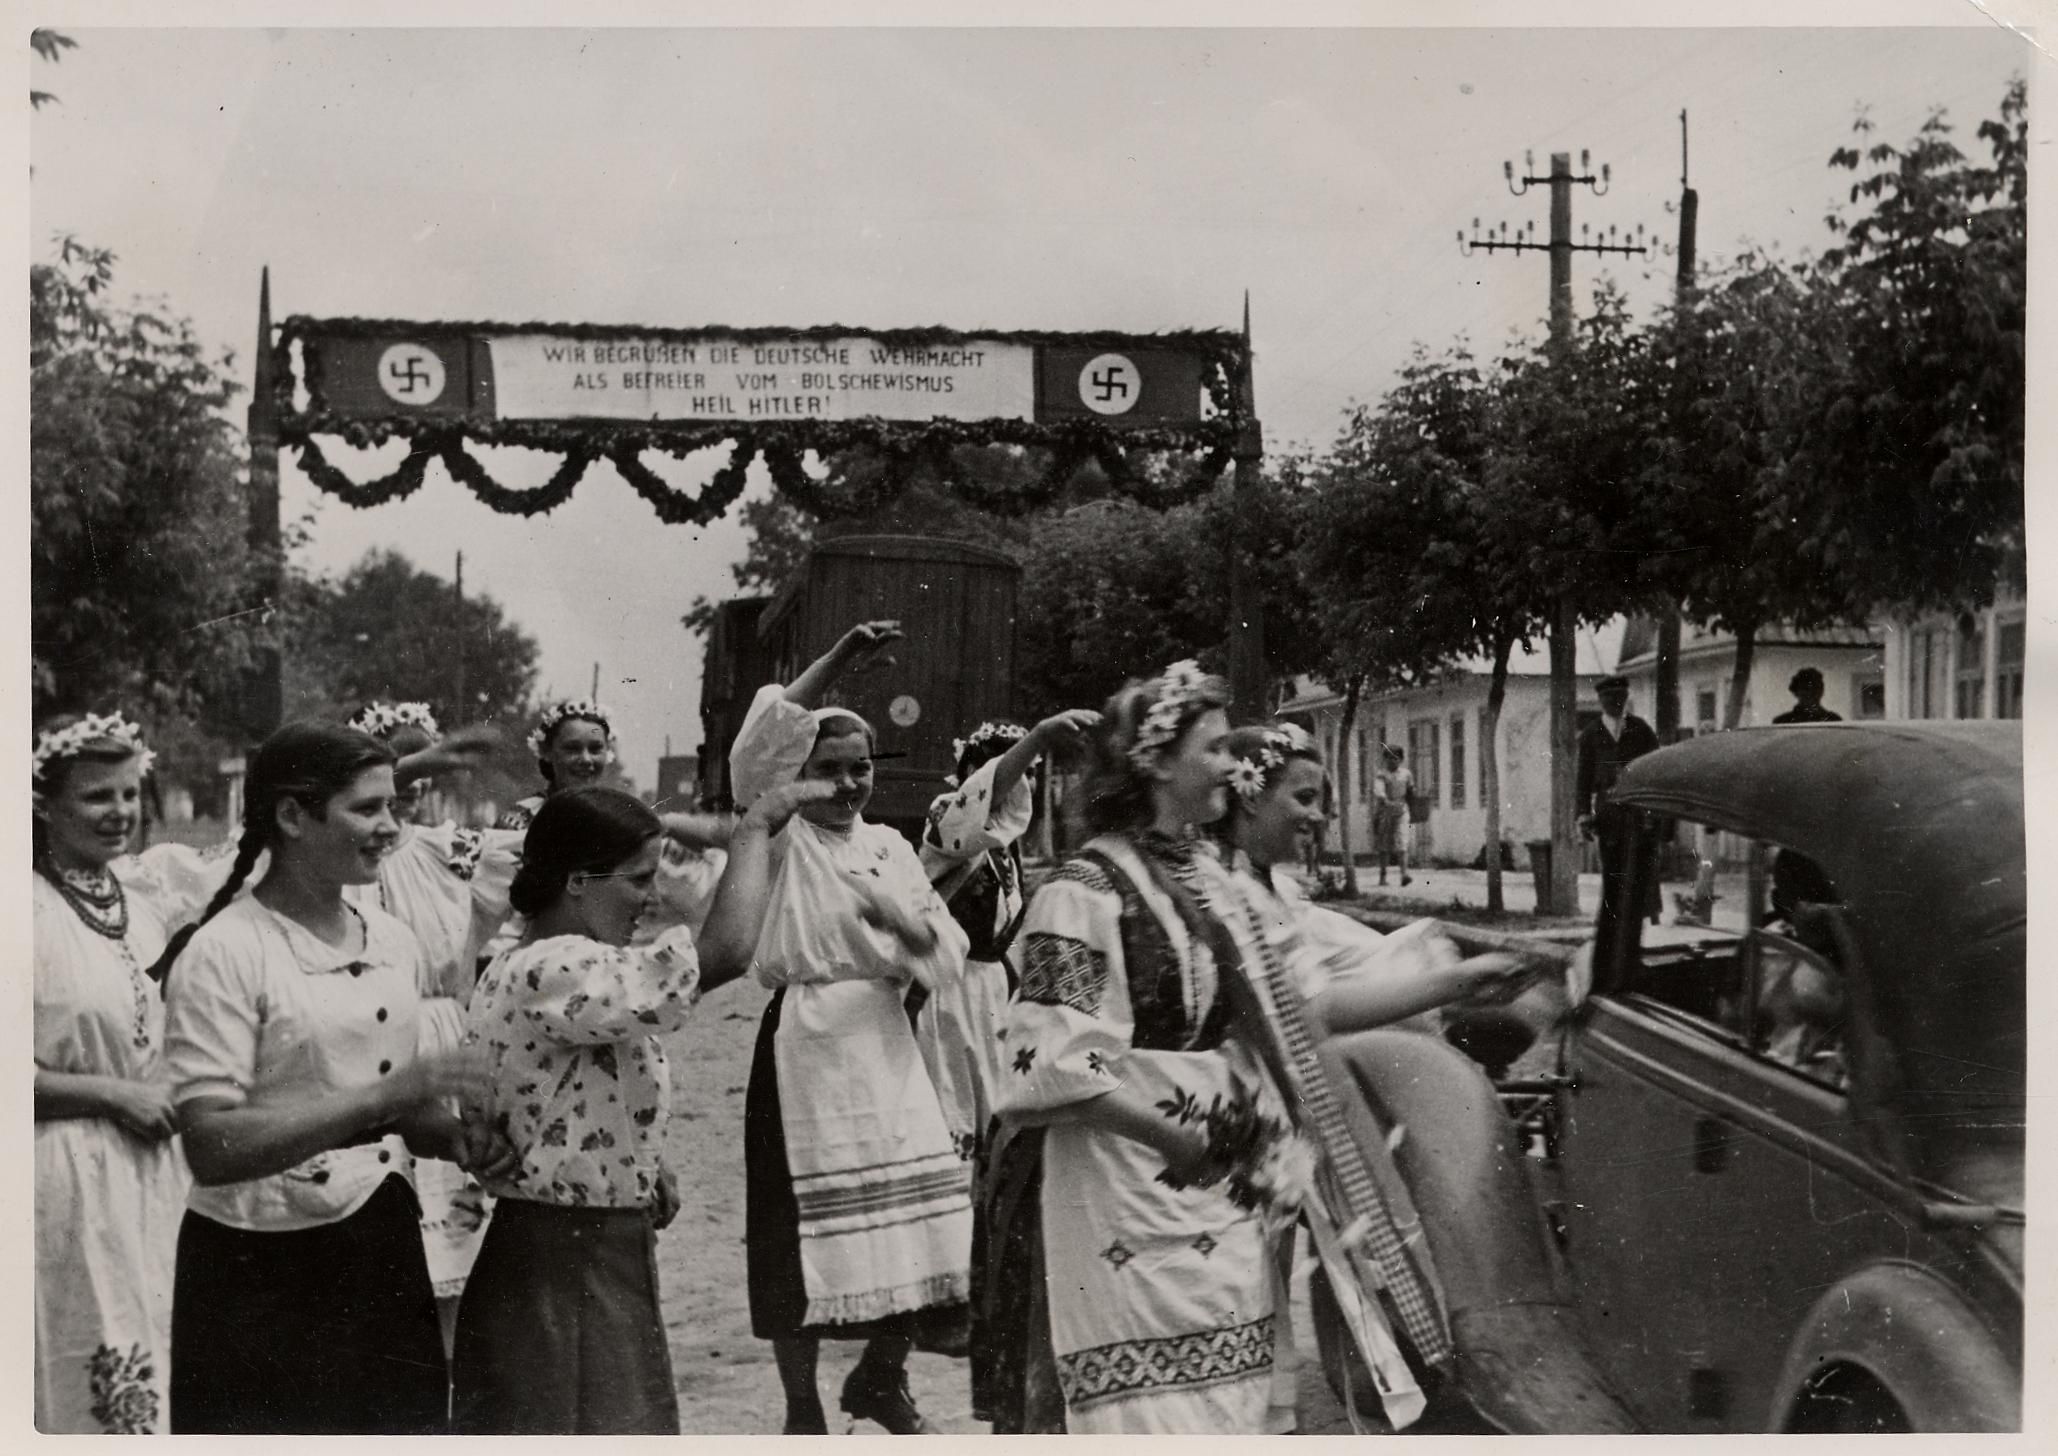 [Fotografie: Begrüßung der deutschen Truppen in der Ukraine, Propagandakompanie-Aufnahme, 20. Juli 1941]